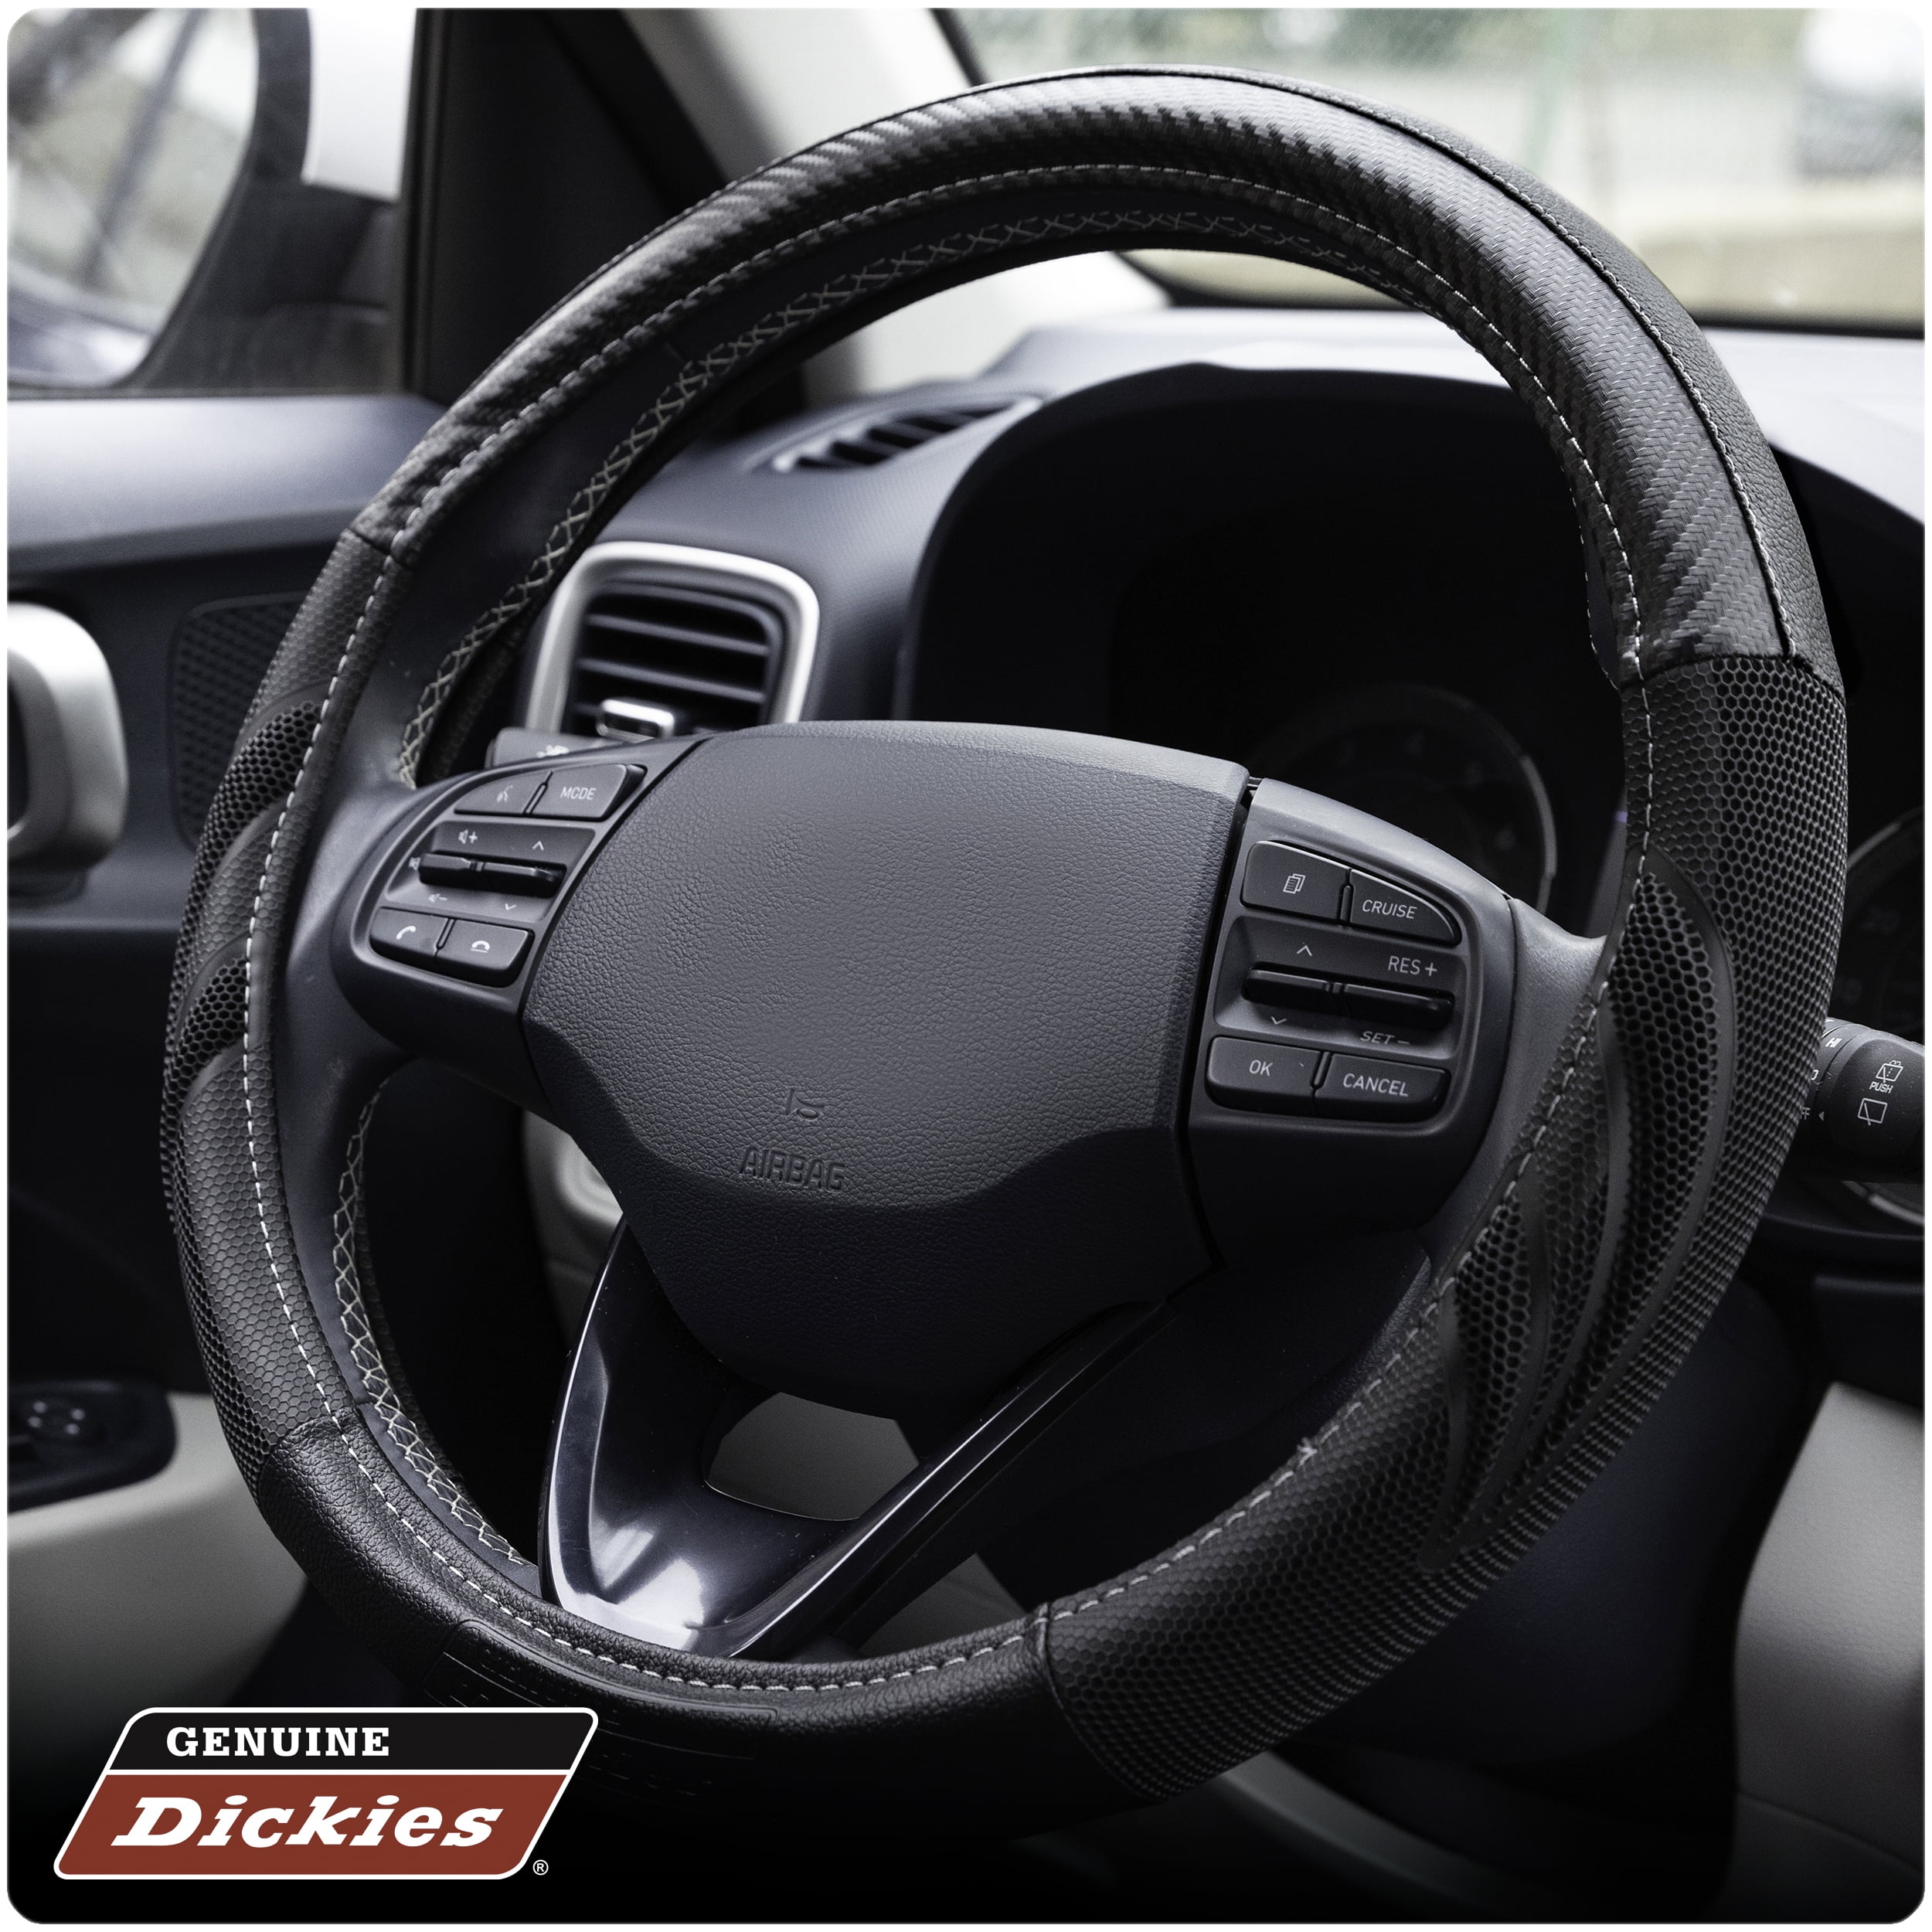 Genuine Dickies Black Carbon Fiber Dura Grip Steering Wheel Cover